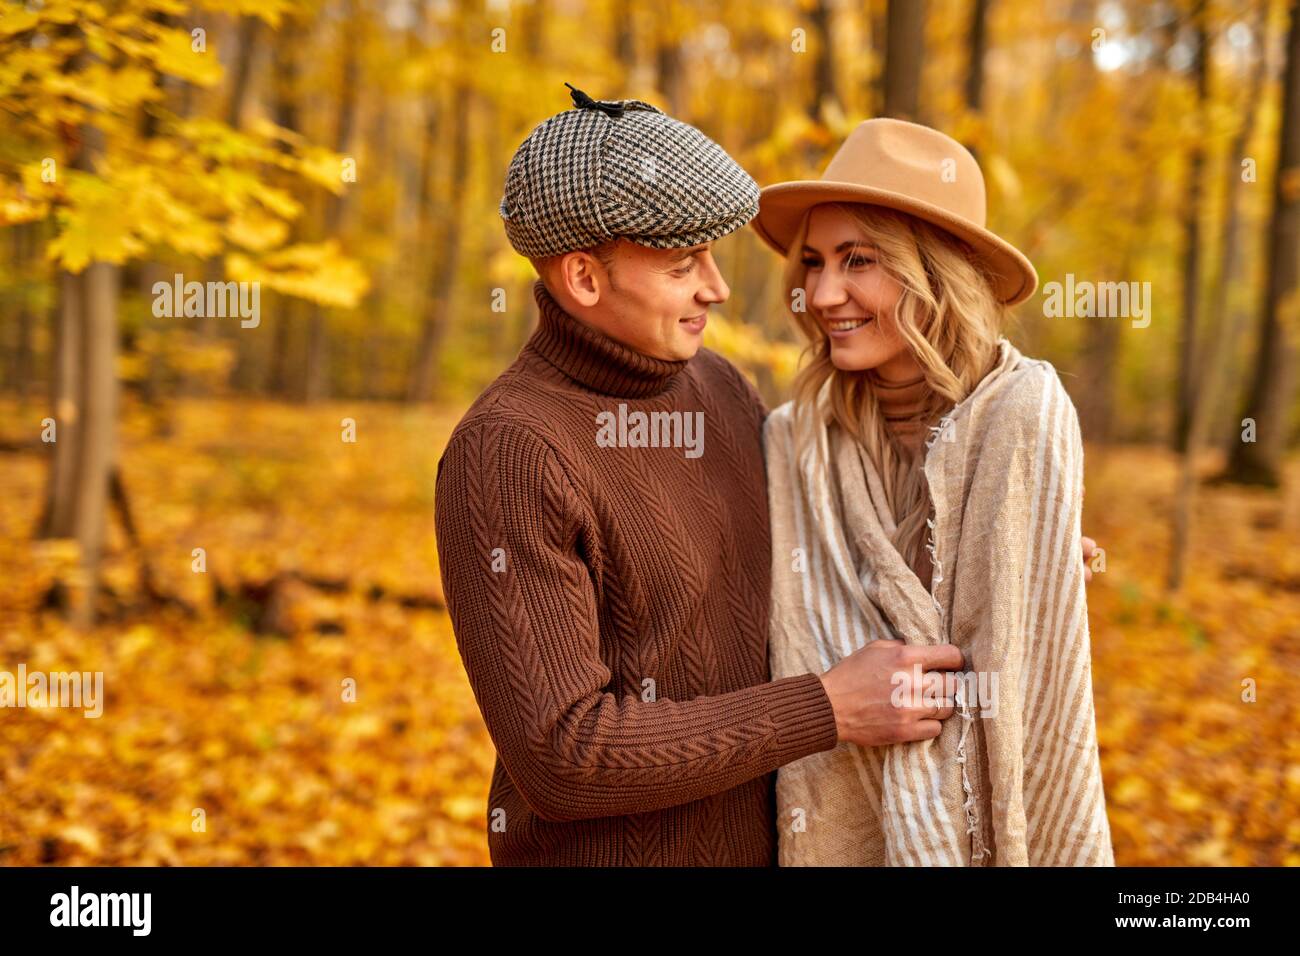 Schöner Mann ist freundlich zu seiner Frau, Liebesgeschichte im Herbst Wald oder Park, verbringen Freizeit zusammen in der Natur, posieren Stockfoto